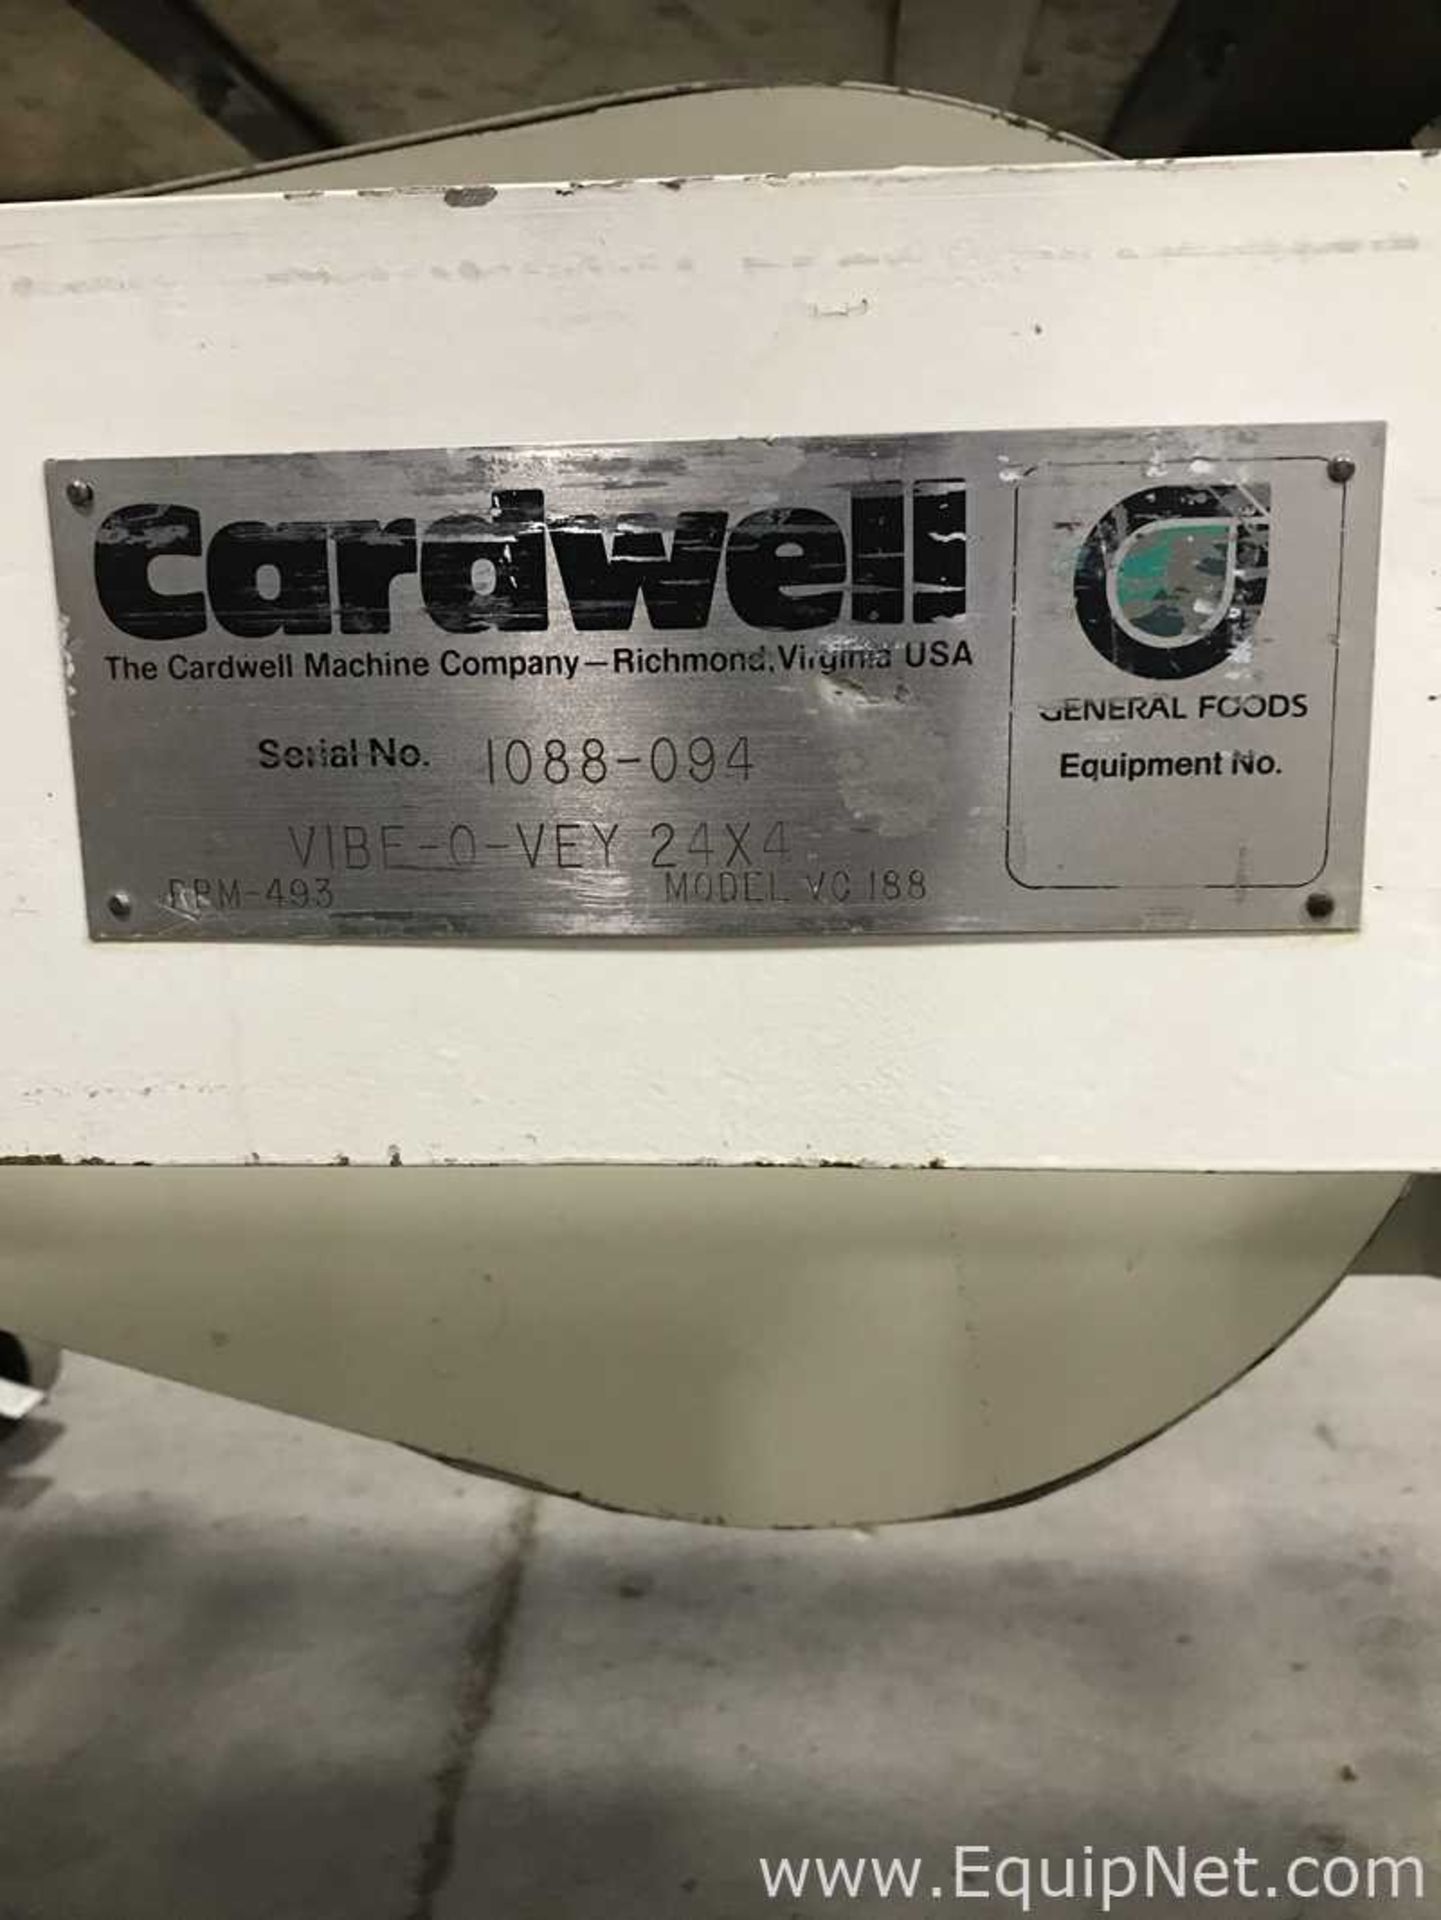 Cardwell Vibe-O-Vey 24x4 Vibrating Conveyor - Image 3 of 3